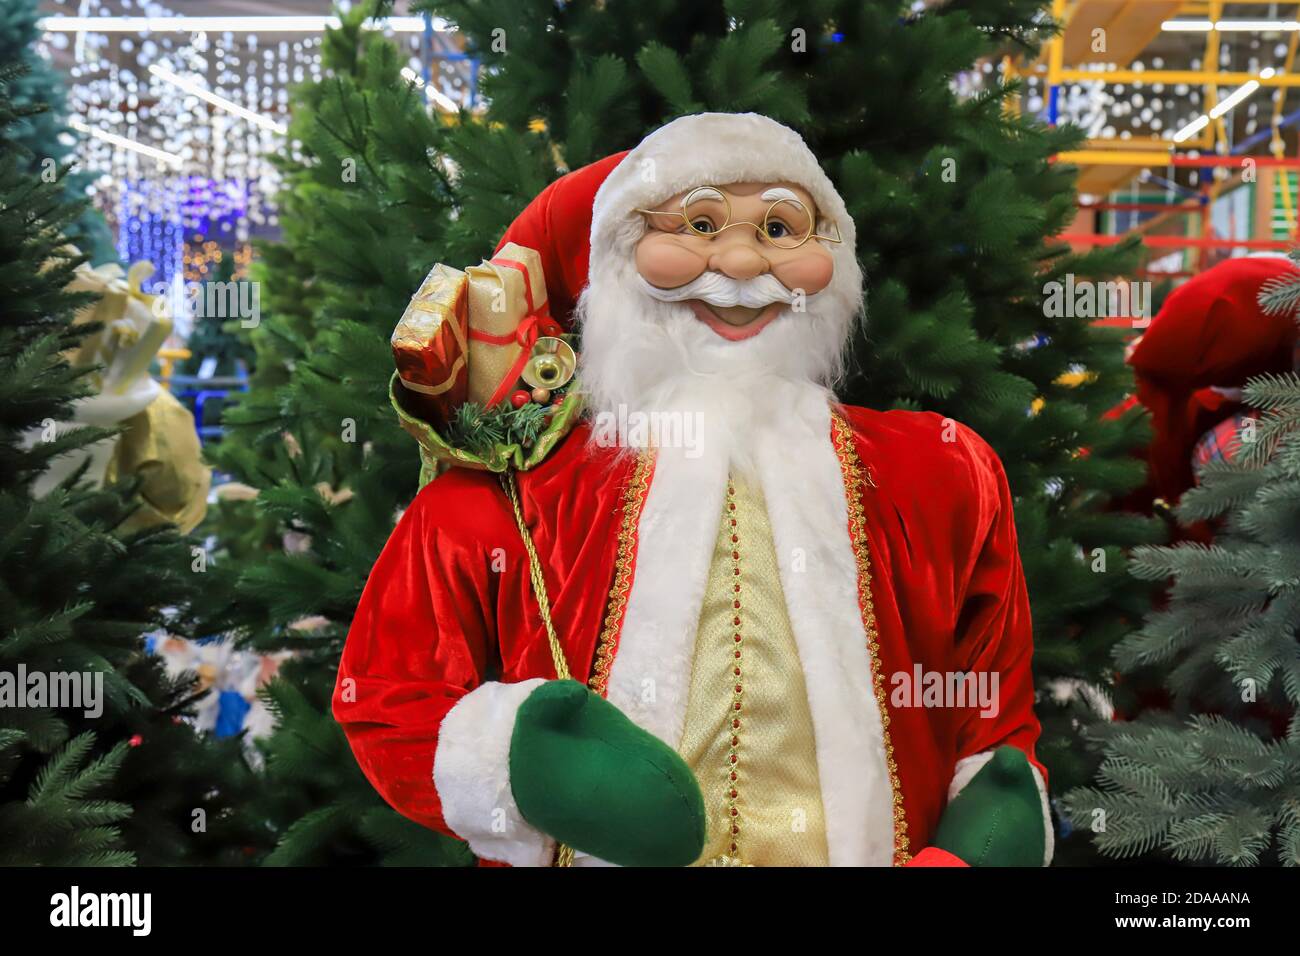 Divertente Babbo Natale sorridente in un cappello rosso, bello Capodanno e Natale giocattolo, decorazioni. Natale Natale inverno shopping, vendita. Negozio di giocattoli Foto Stock